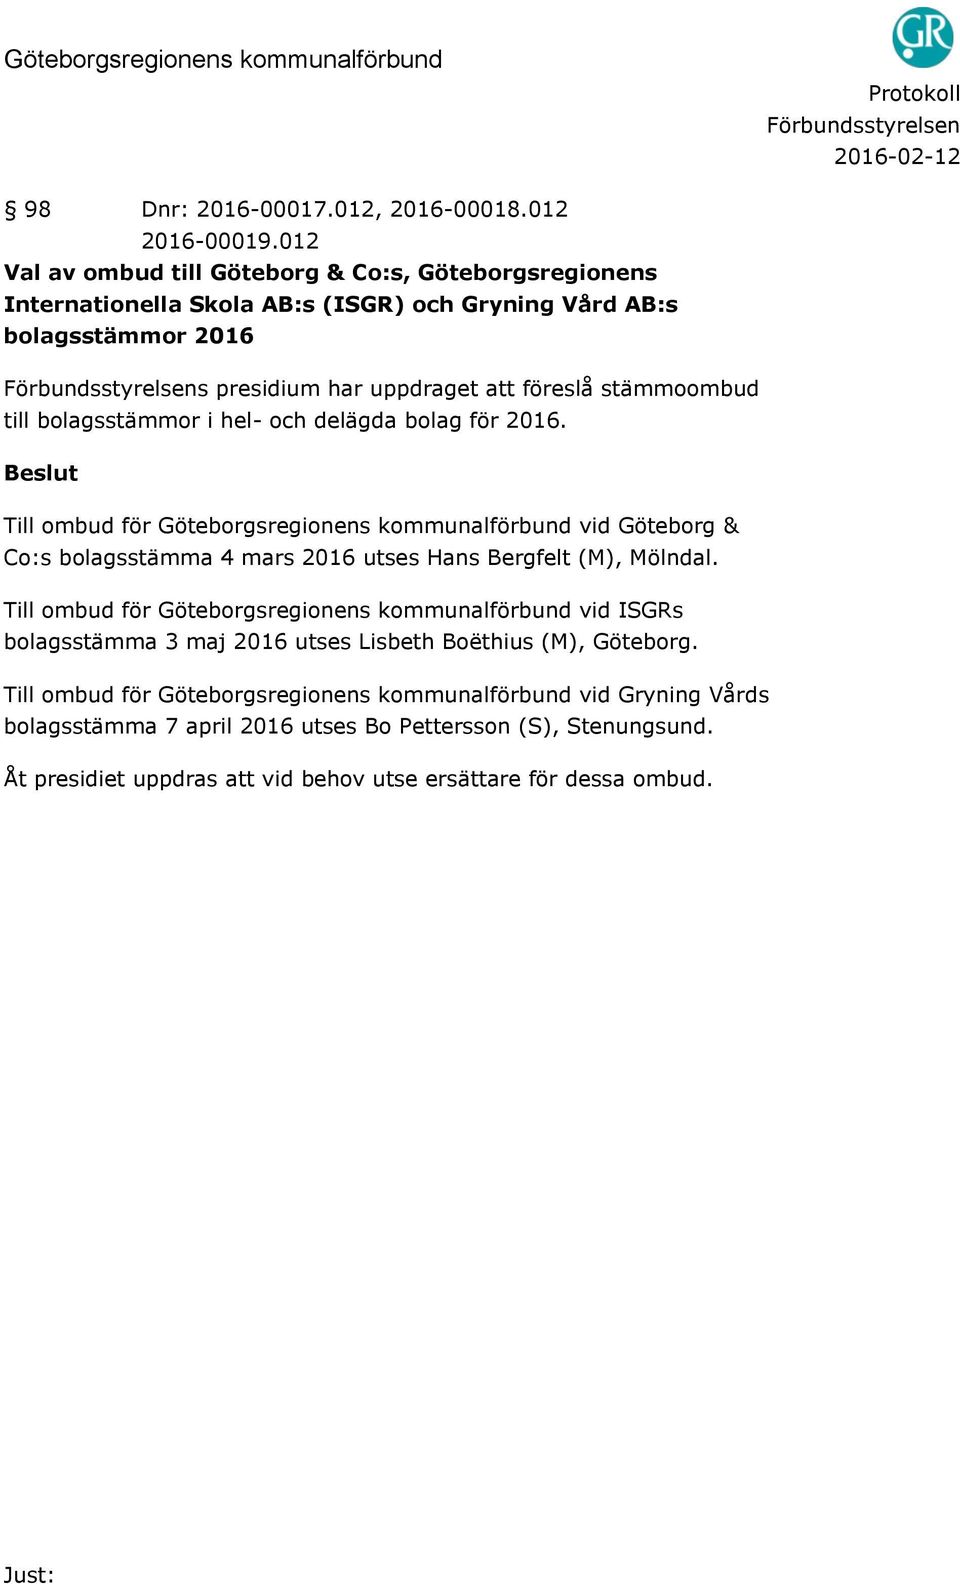 till bolagsstämmor i hel- och delägda bolag för 2016. Till ombud för Göteborgsregionens kommunalförbund vid Göteborg & Co:s bolagsstämma 4 mars 2016 utses Hans Bergfelt (M), Mölndal.